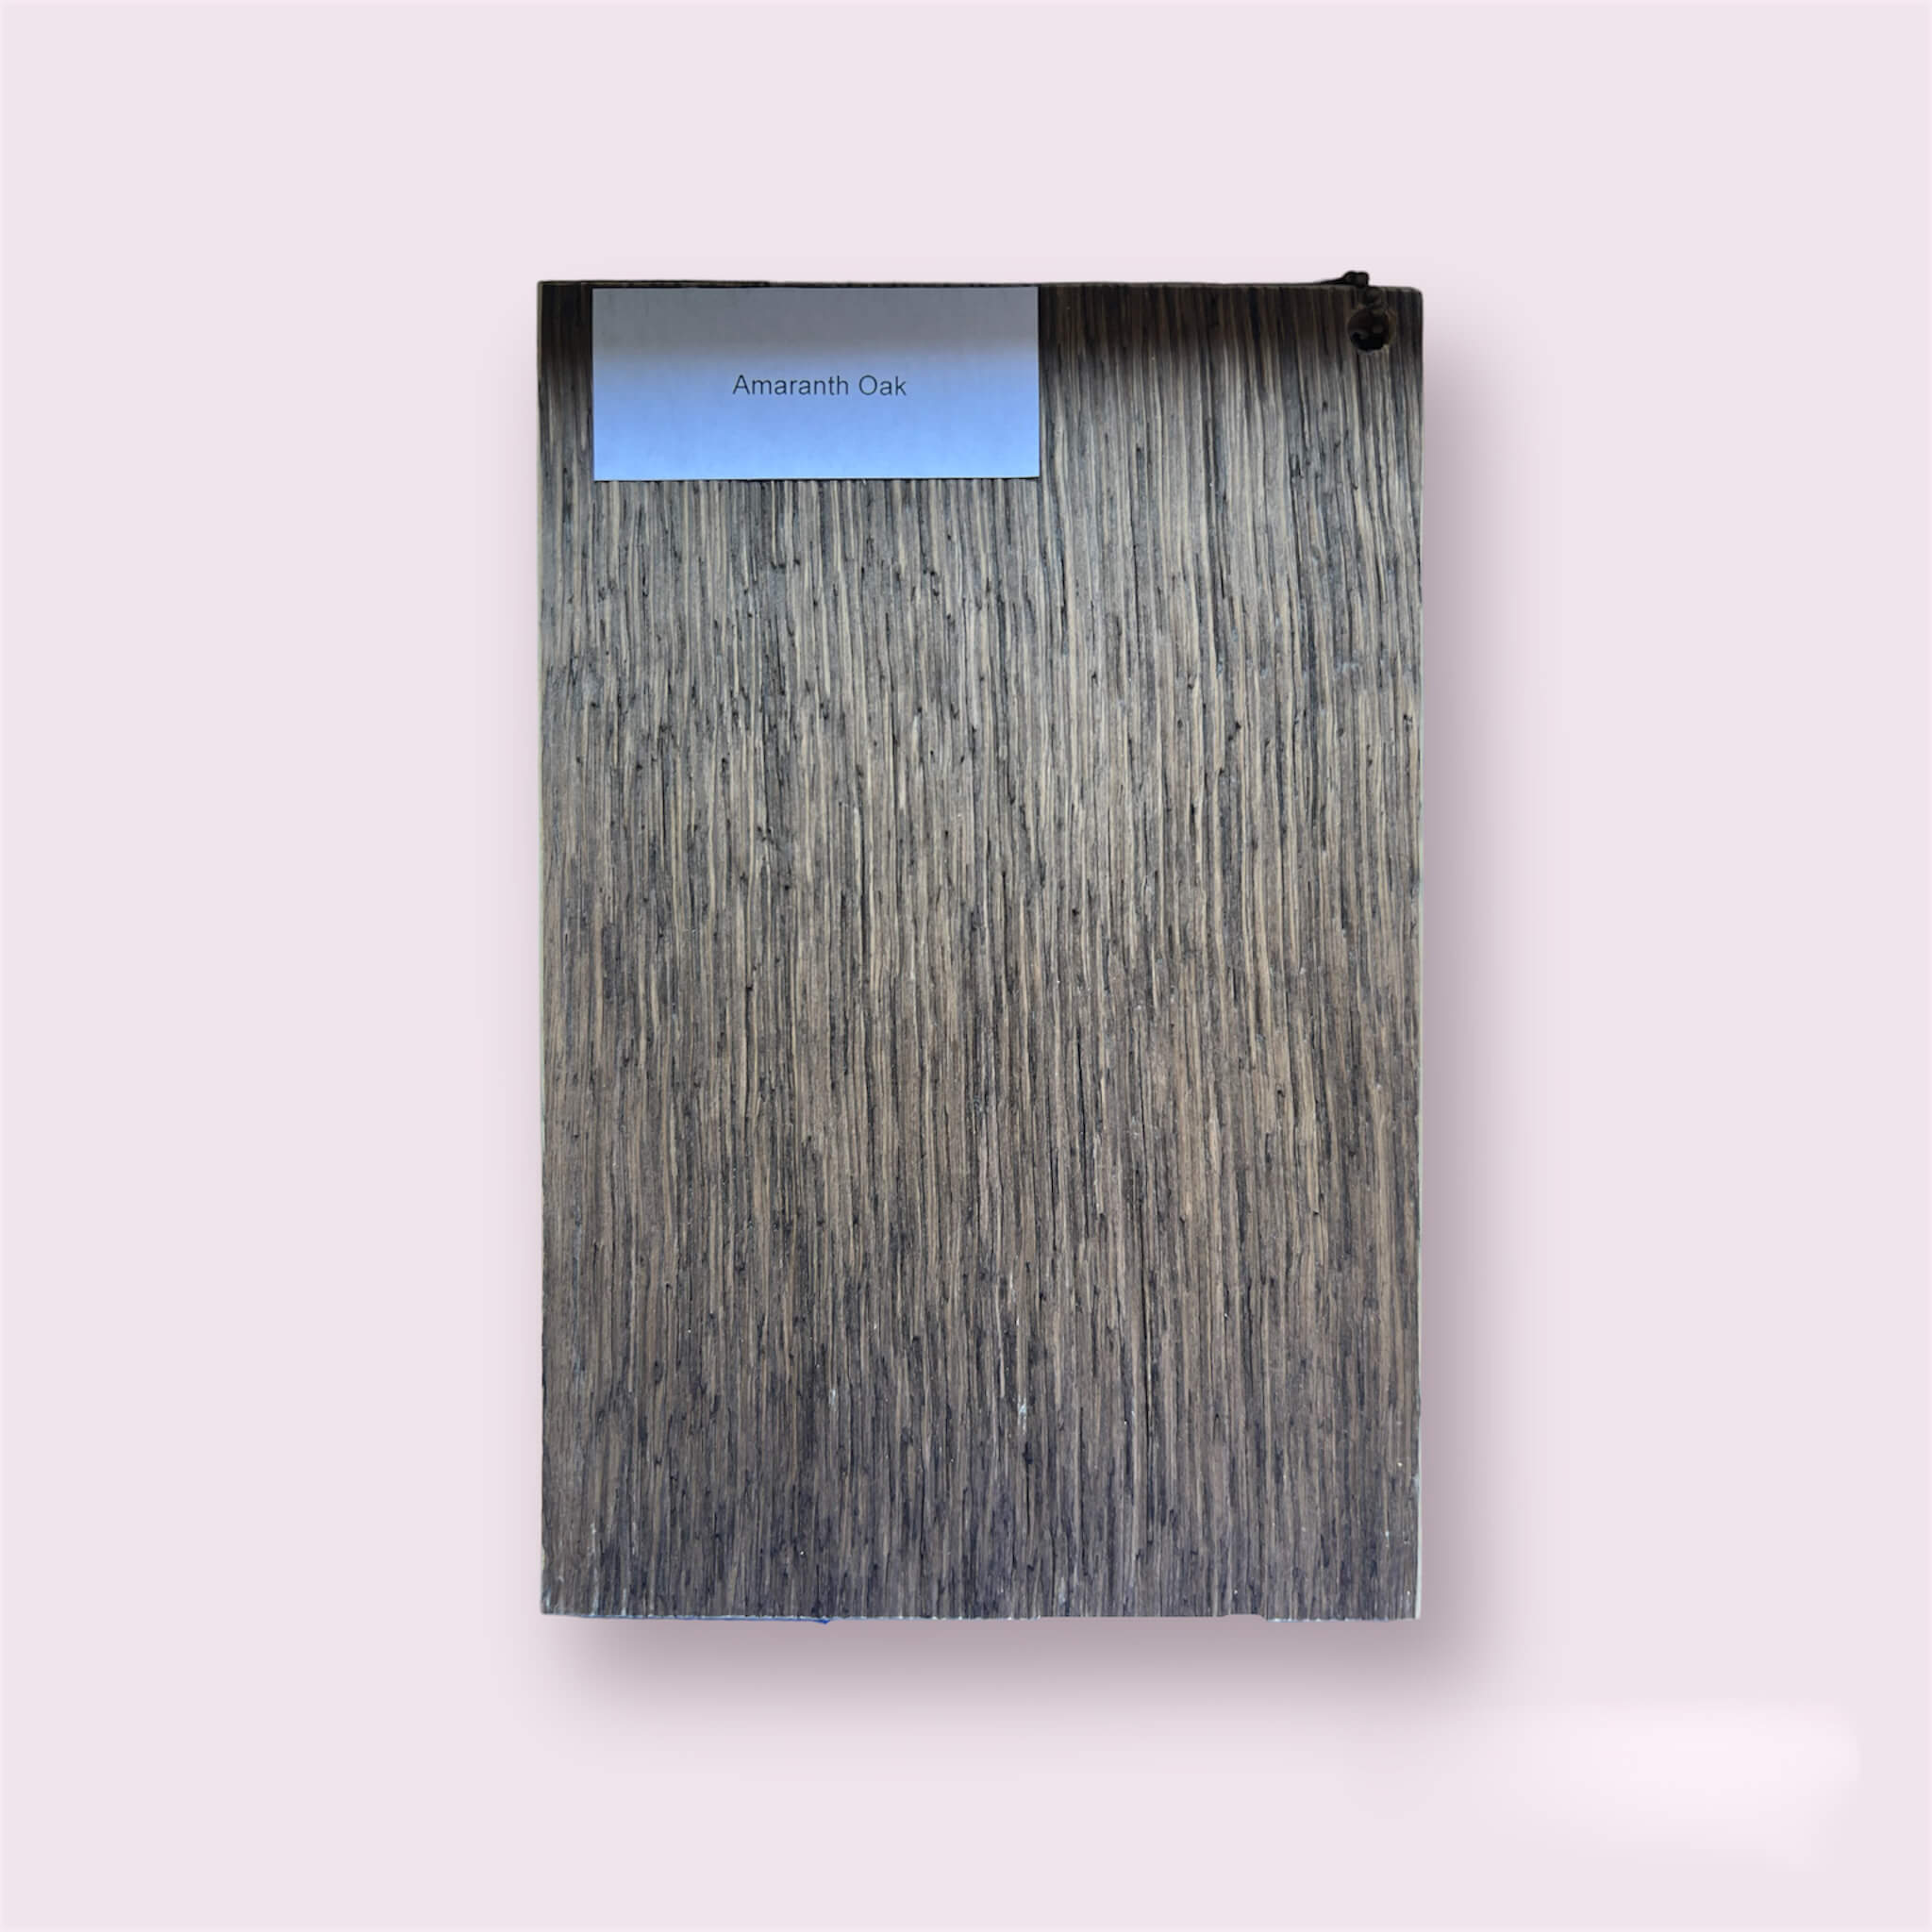 Zdjęcie przedstawia fornir Amaranth Oak - cienką warstwę drewna o eleganckim wyglądzie w kolorze Amaranth Oak